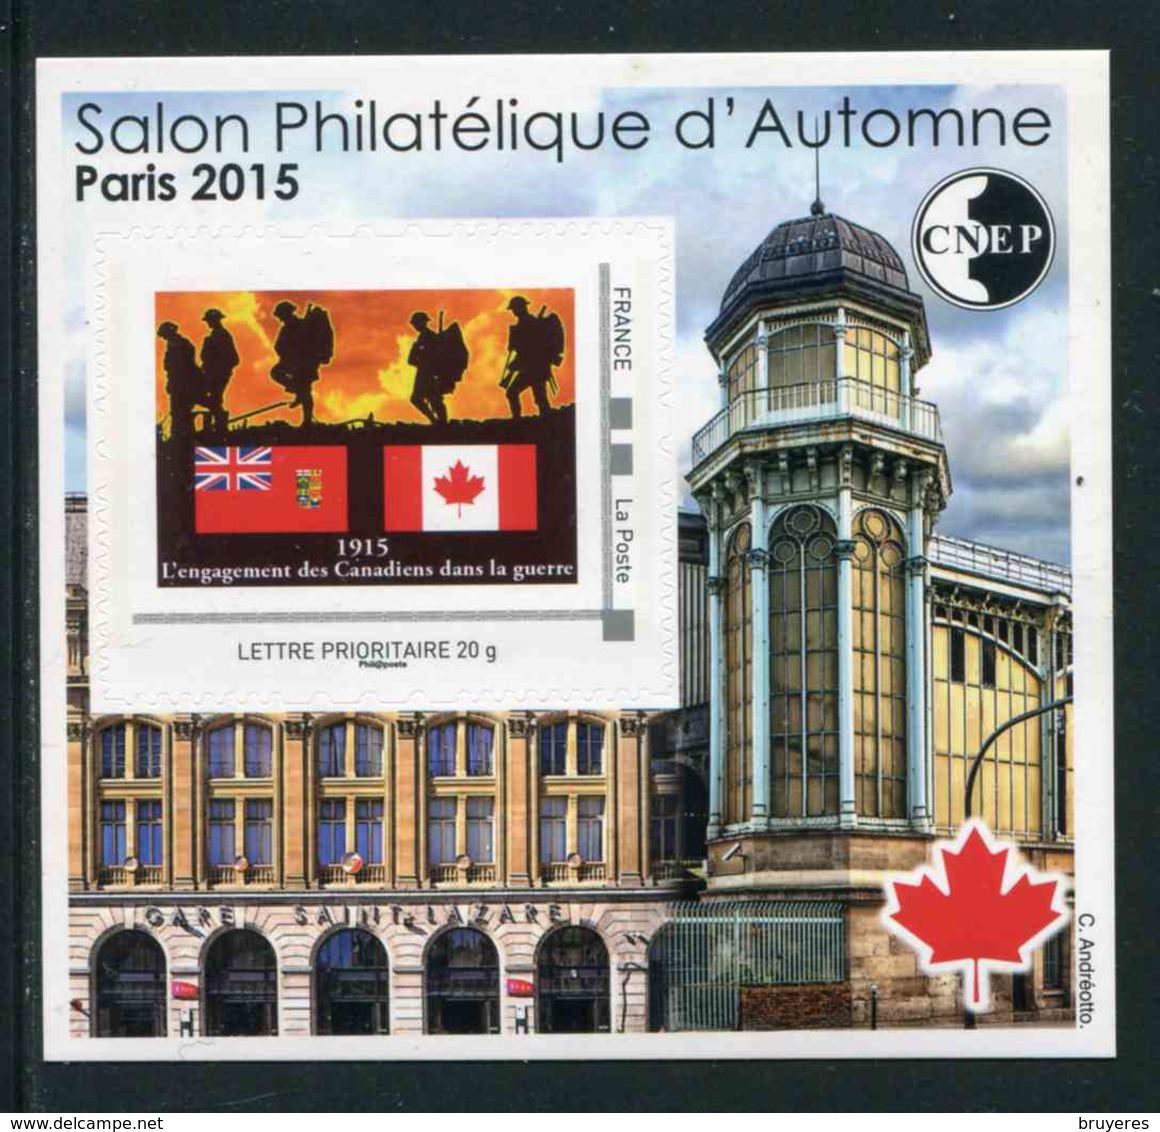 FEUILLET-SOUVENIR** De 2015 De La CNEP "SALON PHILATELIQUE DE PRINTEMPS à PARIS - TIMBRE : Canada" - CNEP